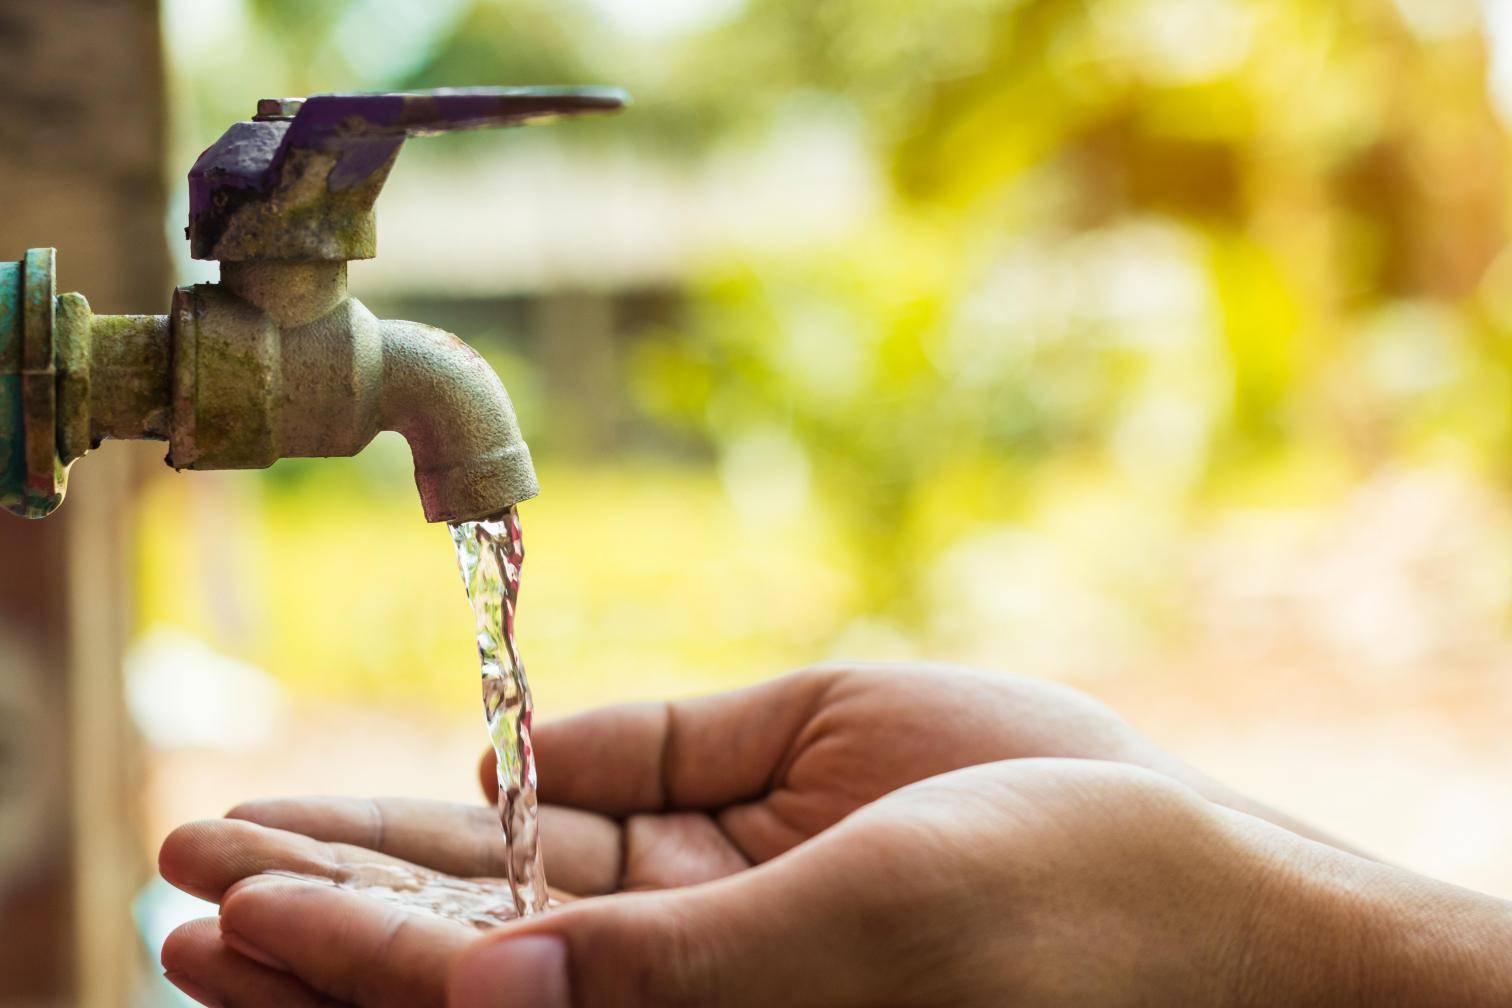 Tarification progressive de l'eau : le gouvernement veut consulter les élus